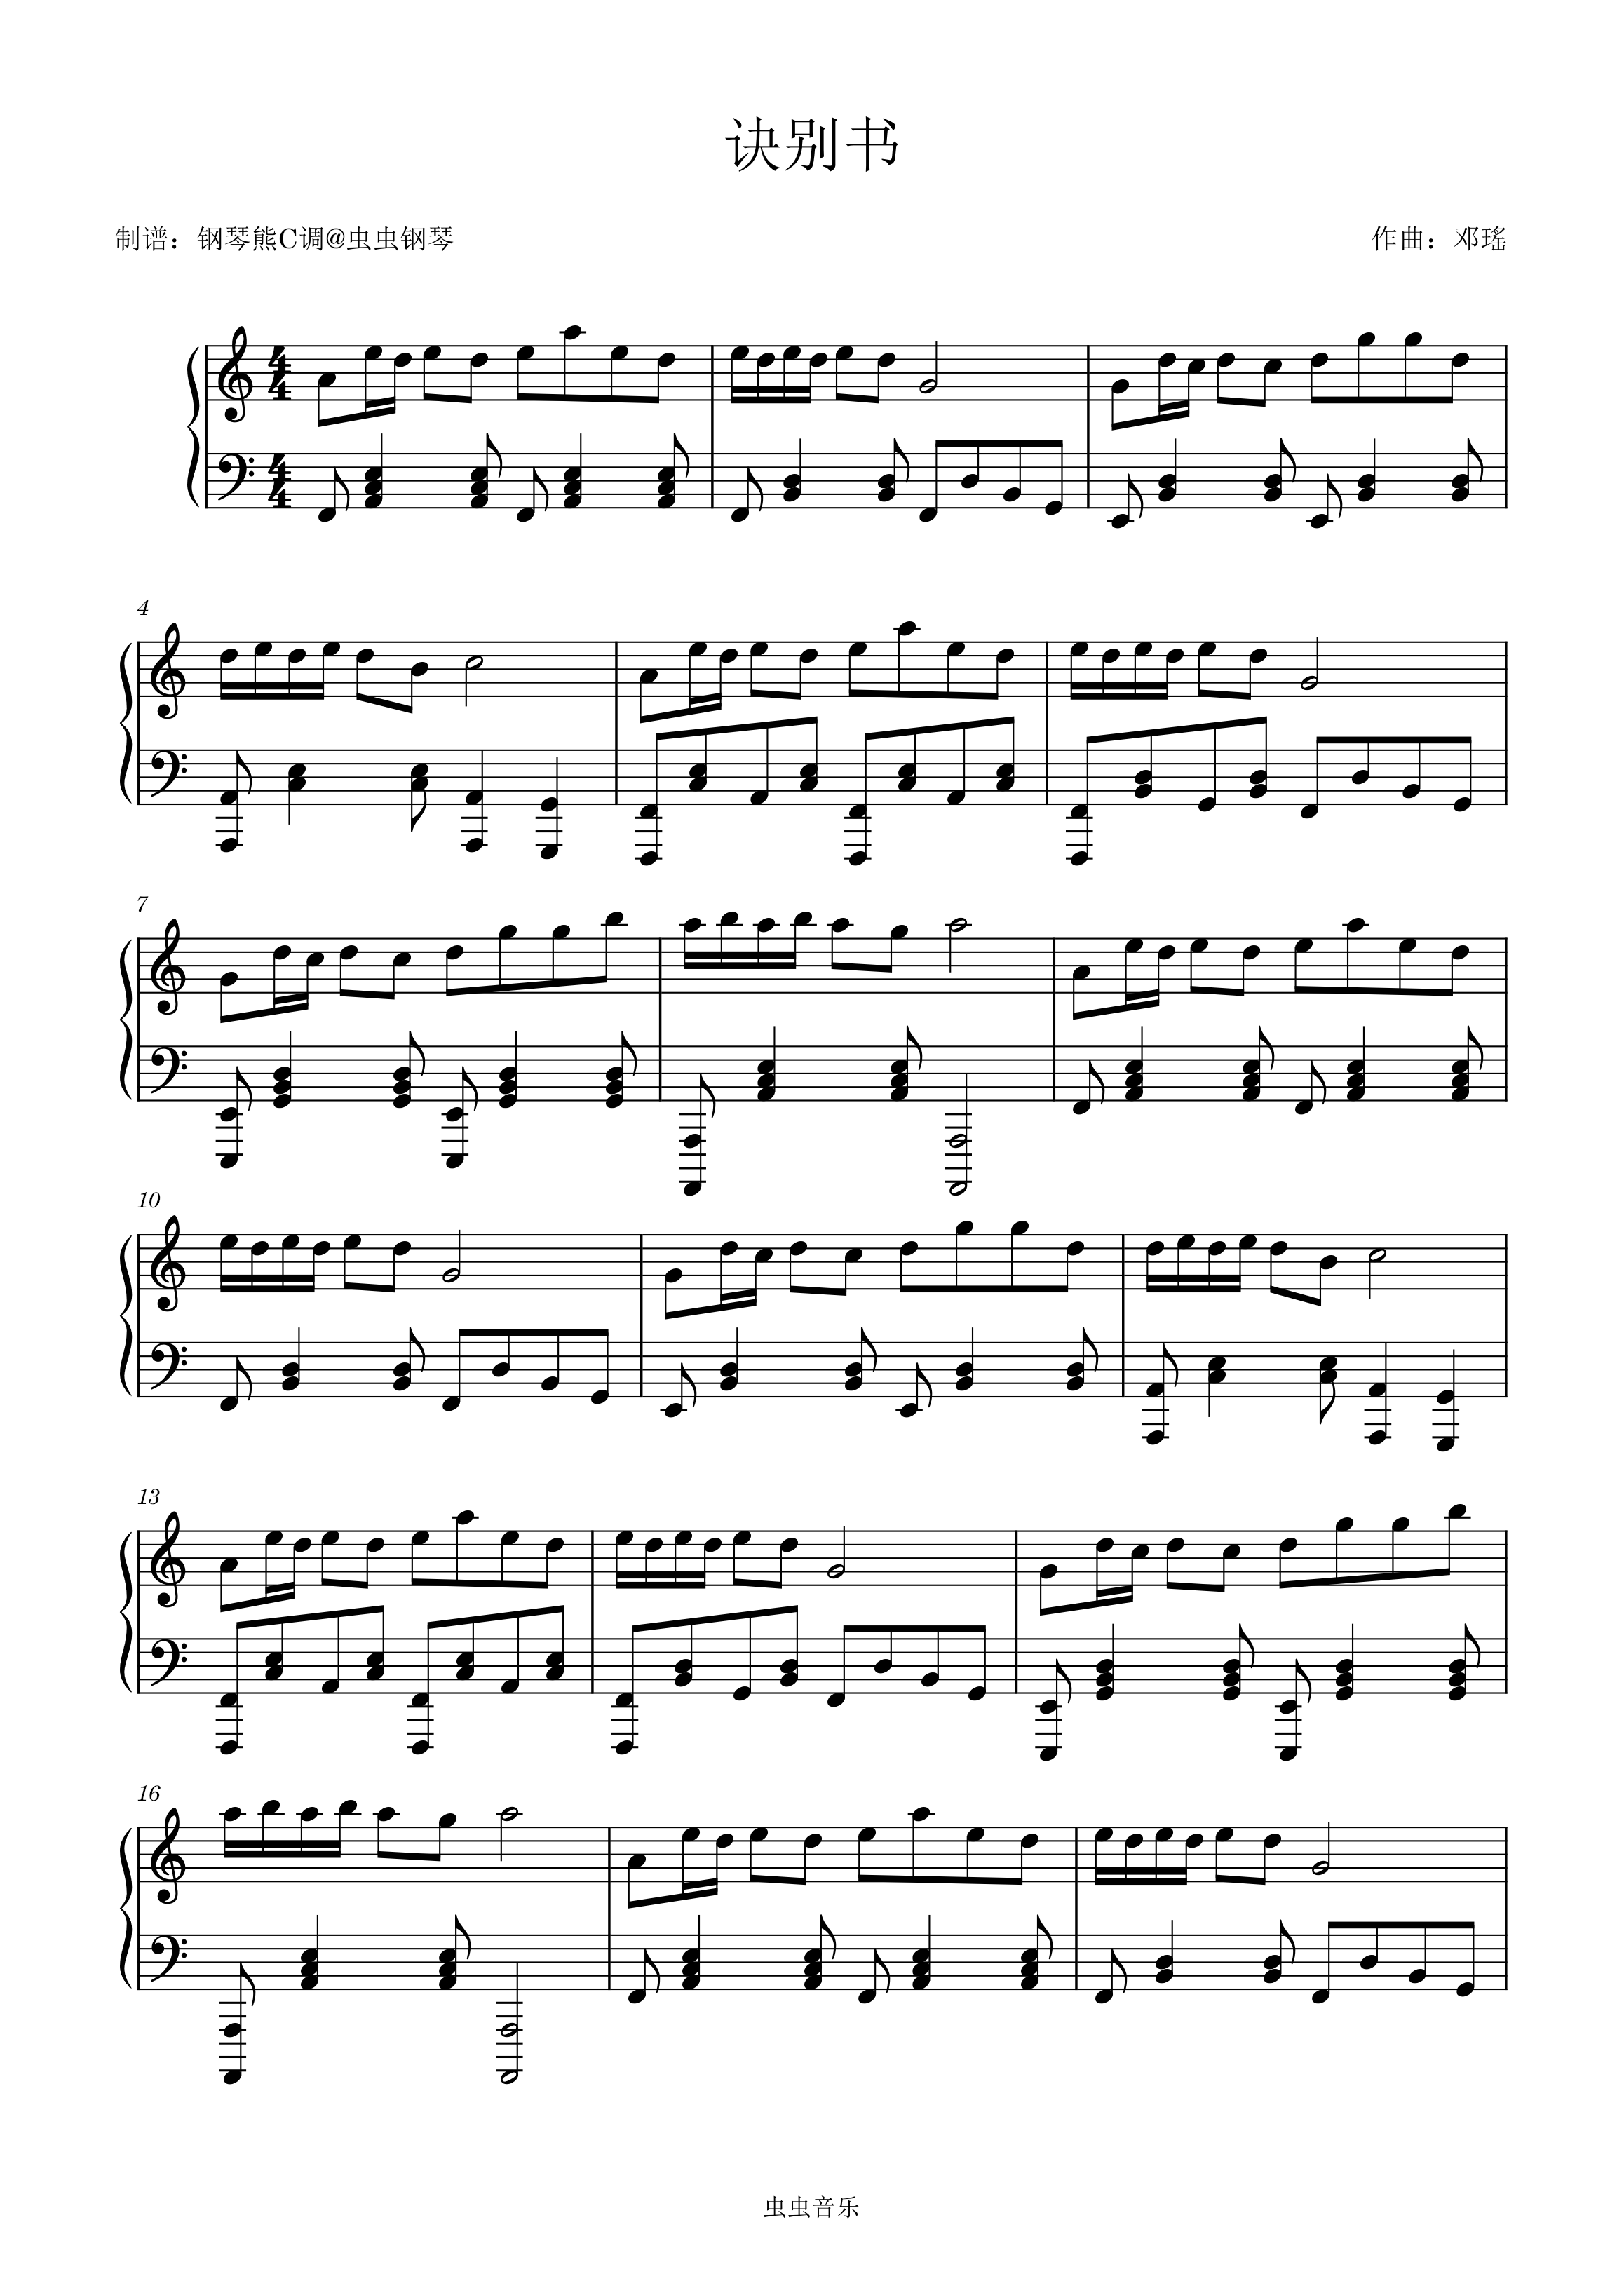 七里香-周杰伦双手简谱预览1-钢琴谱文件（五线谱、双手简谱、数字谱、Midi、PDF）免费下载